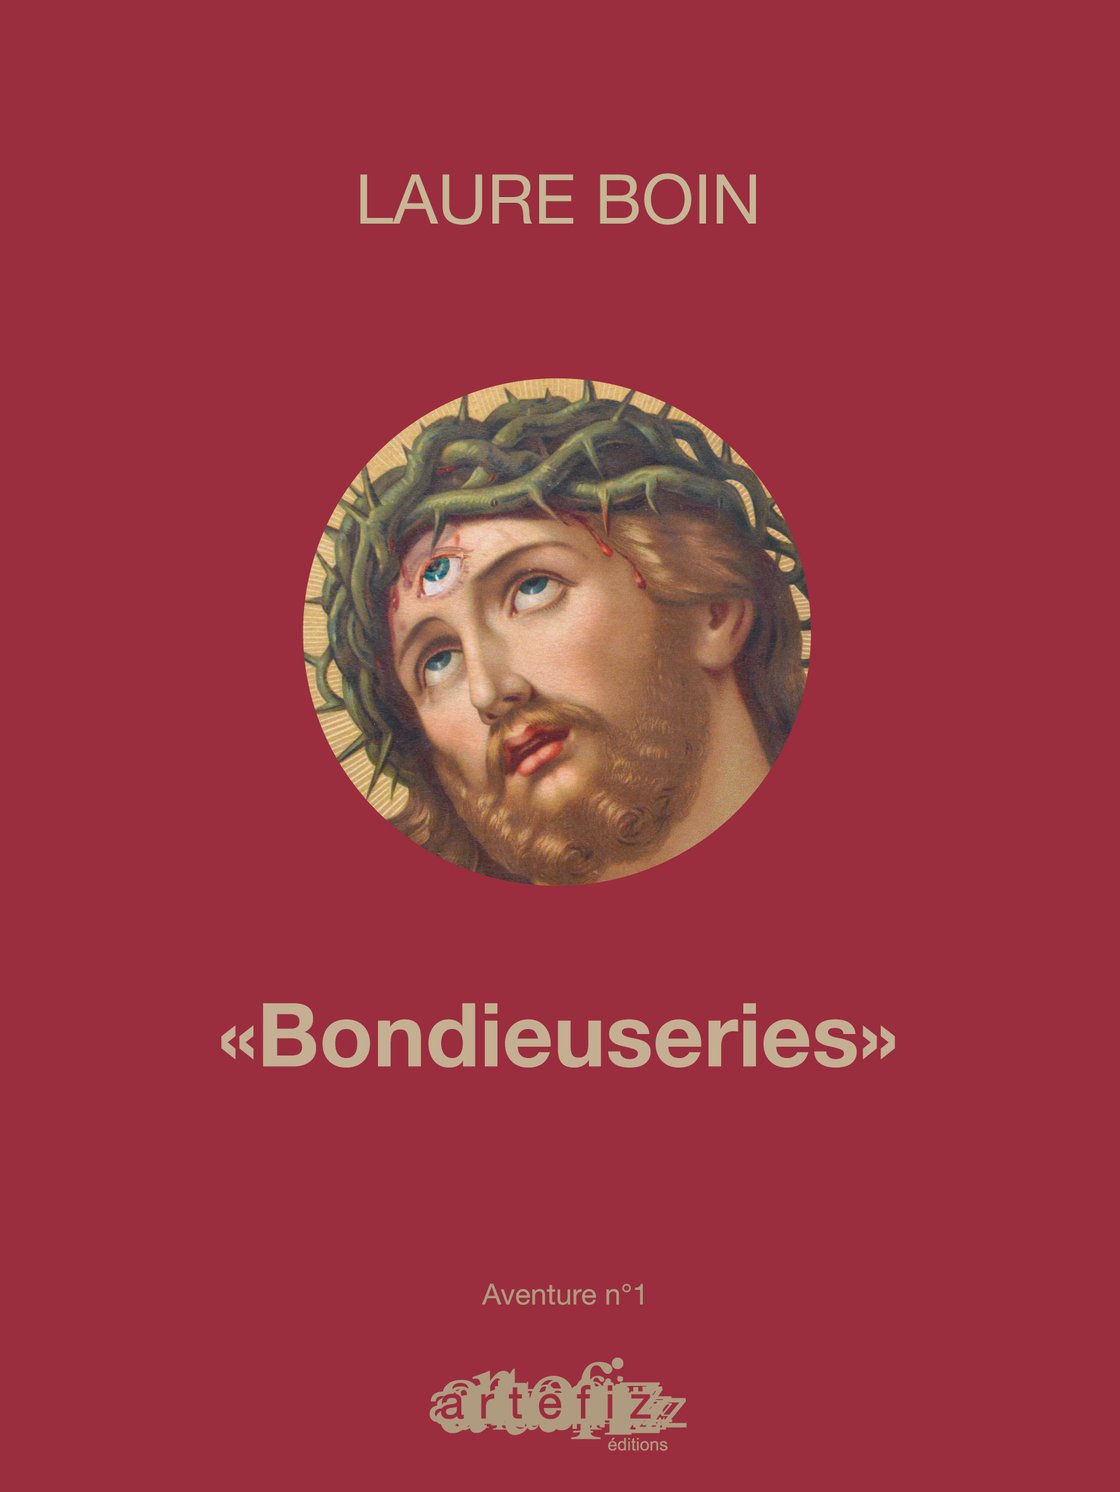 Image of "Bondieuseries" de Laure Boin - édition limitée, préfacée par Robert CRUMB